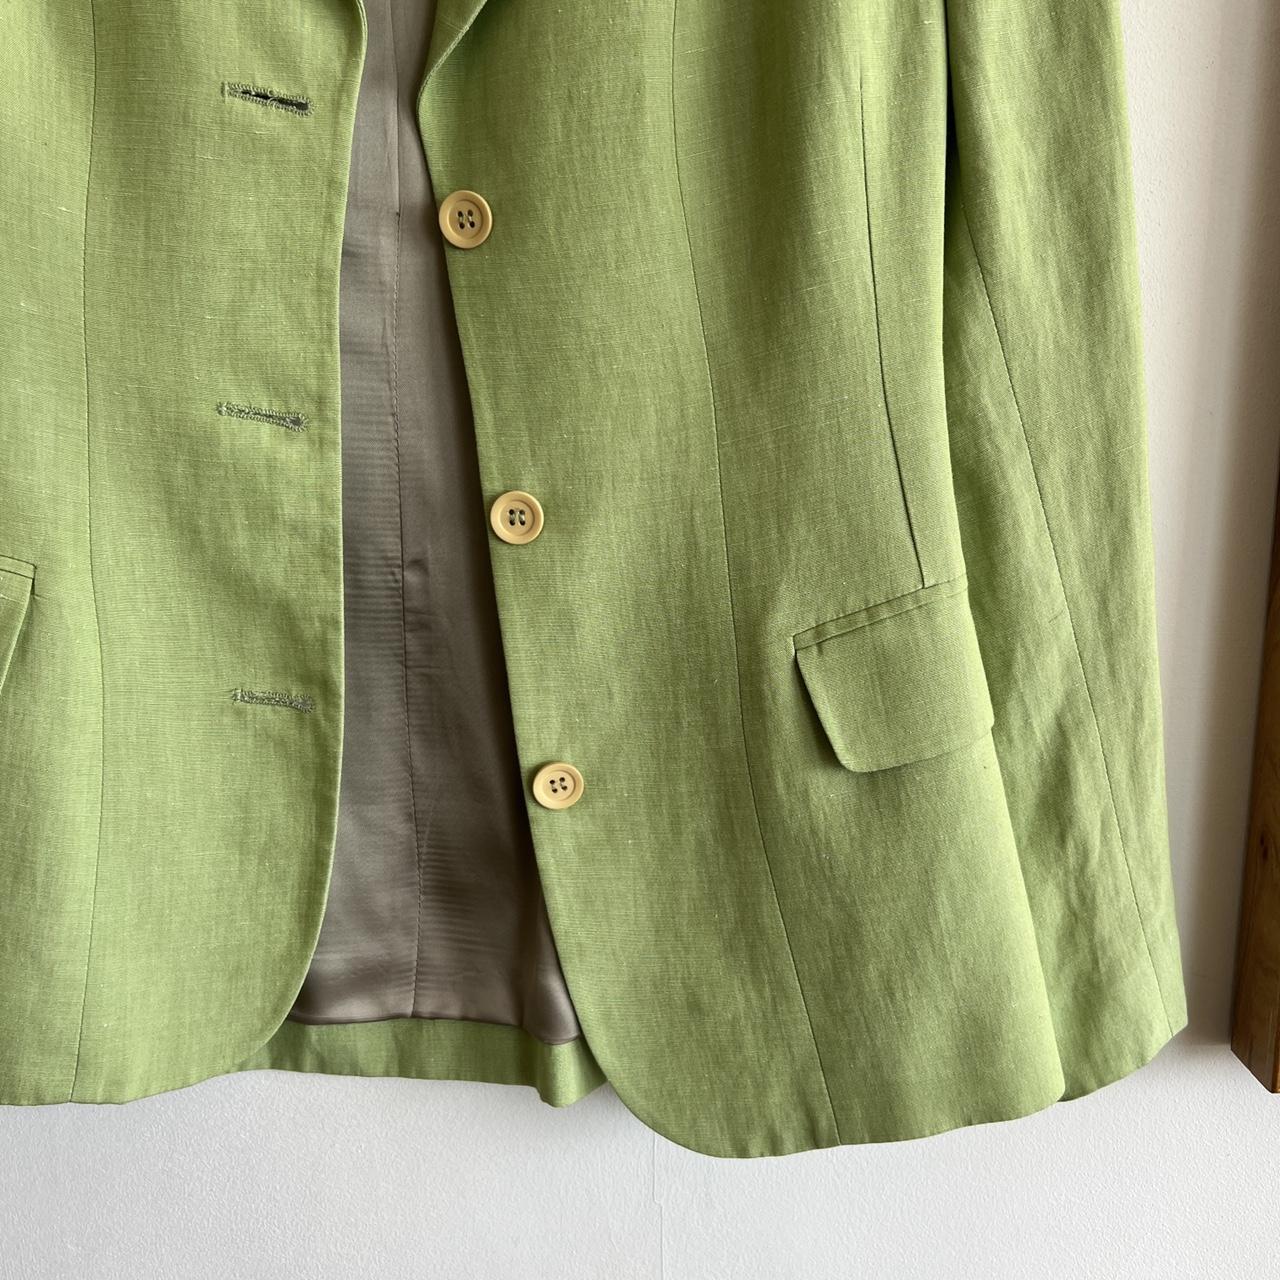 Jigsaw tailored linen light green jacket blazer UK... - Depop